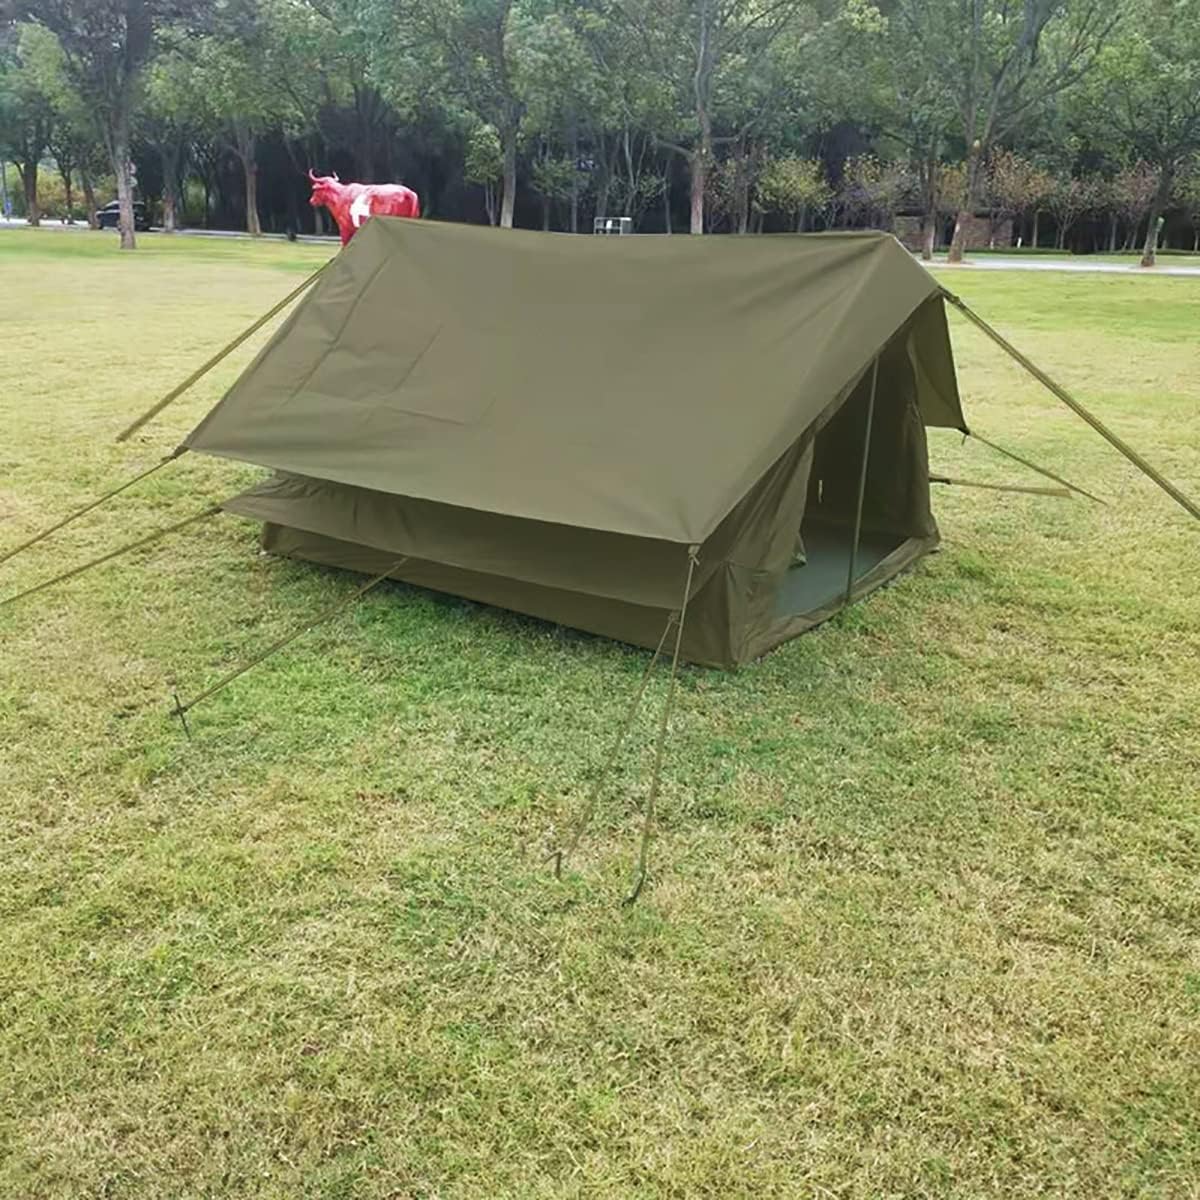 yjgzdy ridge tent green canvas waterproof side